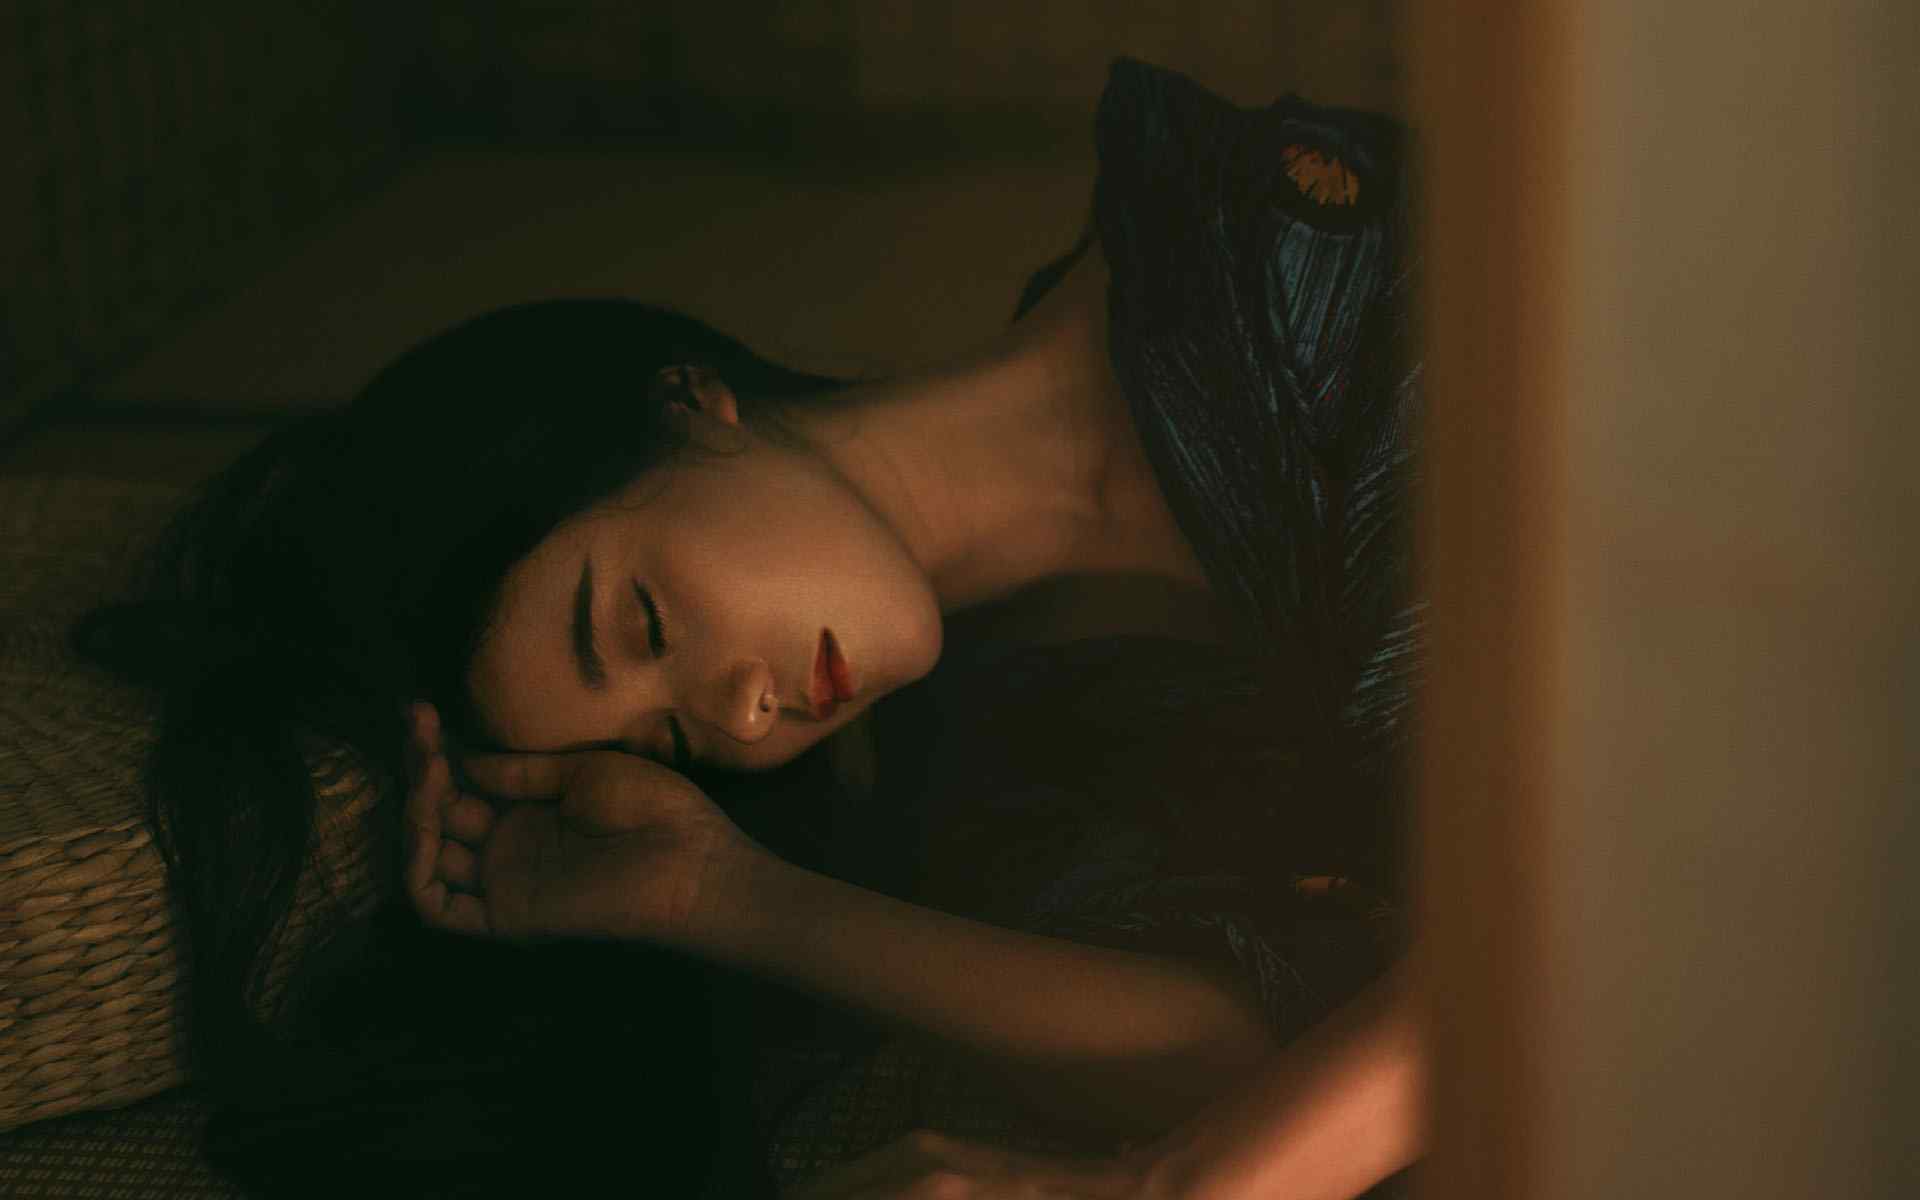 日本美女壁纸性感和服美女昏暗唯美写真高清壁纸性感美腿美女制服艺术摄影极品诱惑